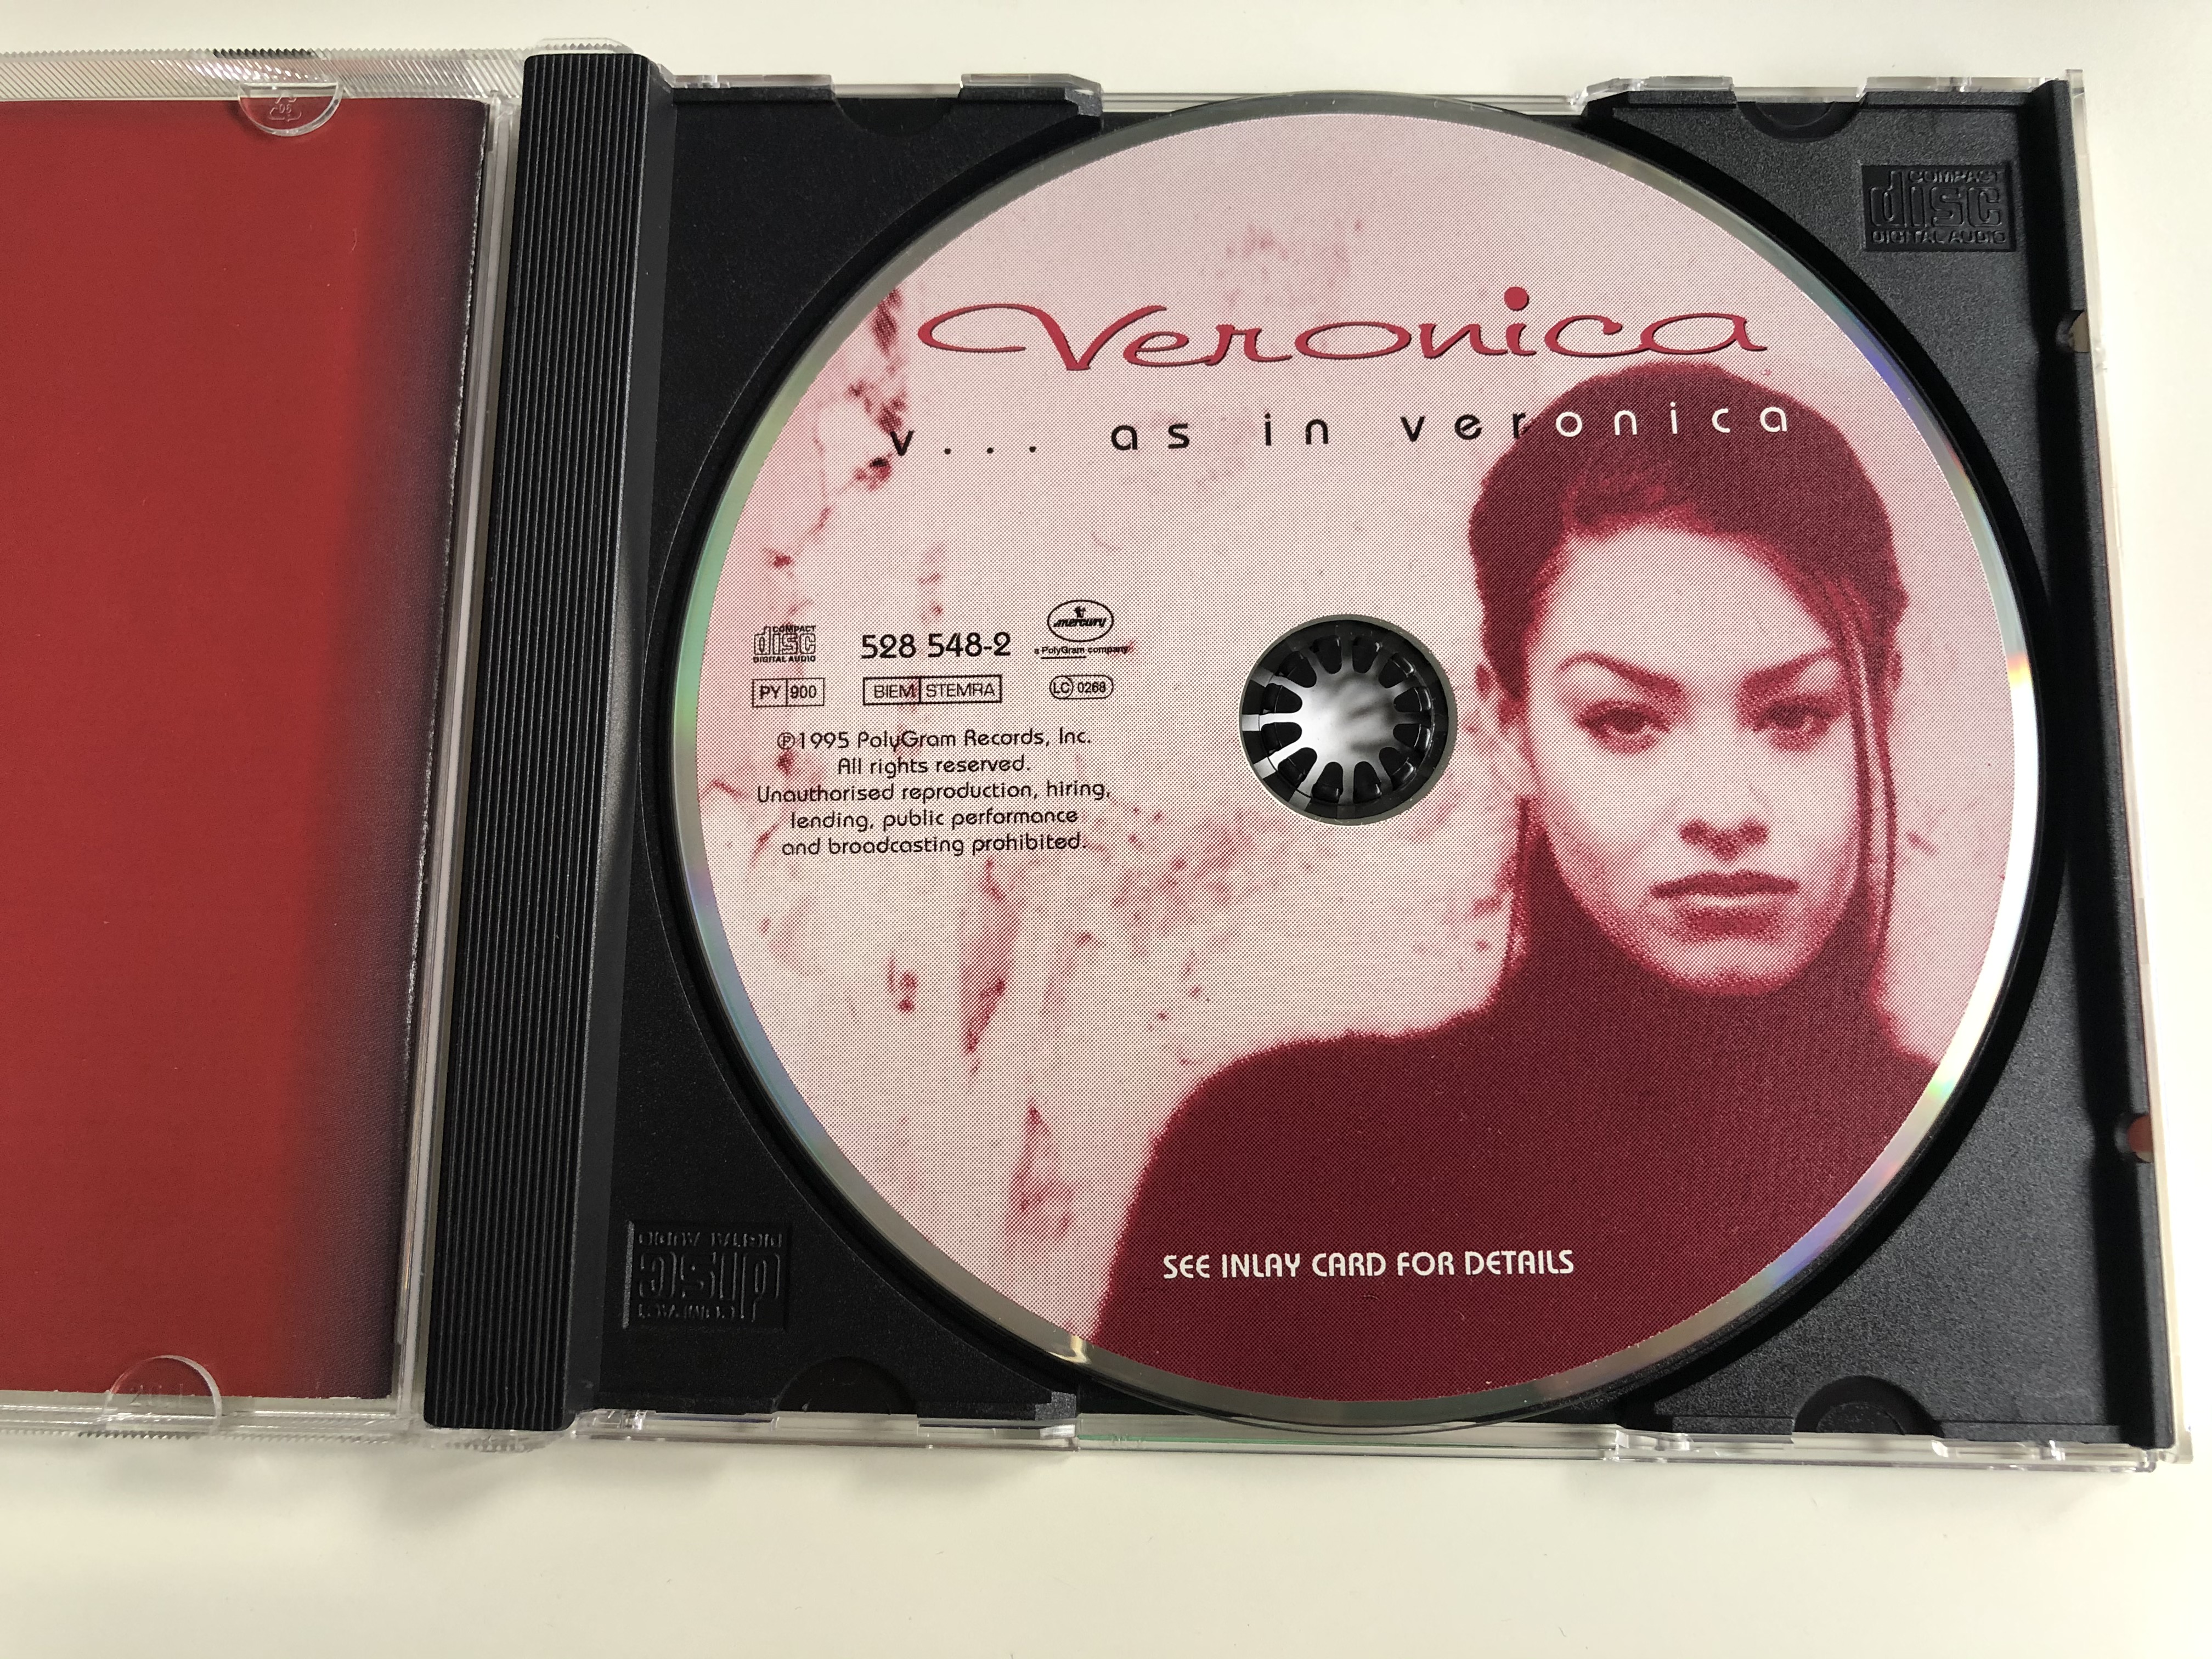 veronica-v...-as-in-veronica-mercury-audio-cd-1995-528-548-2-6-.jpg